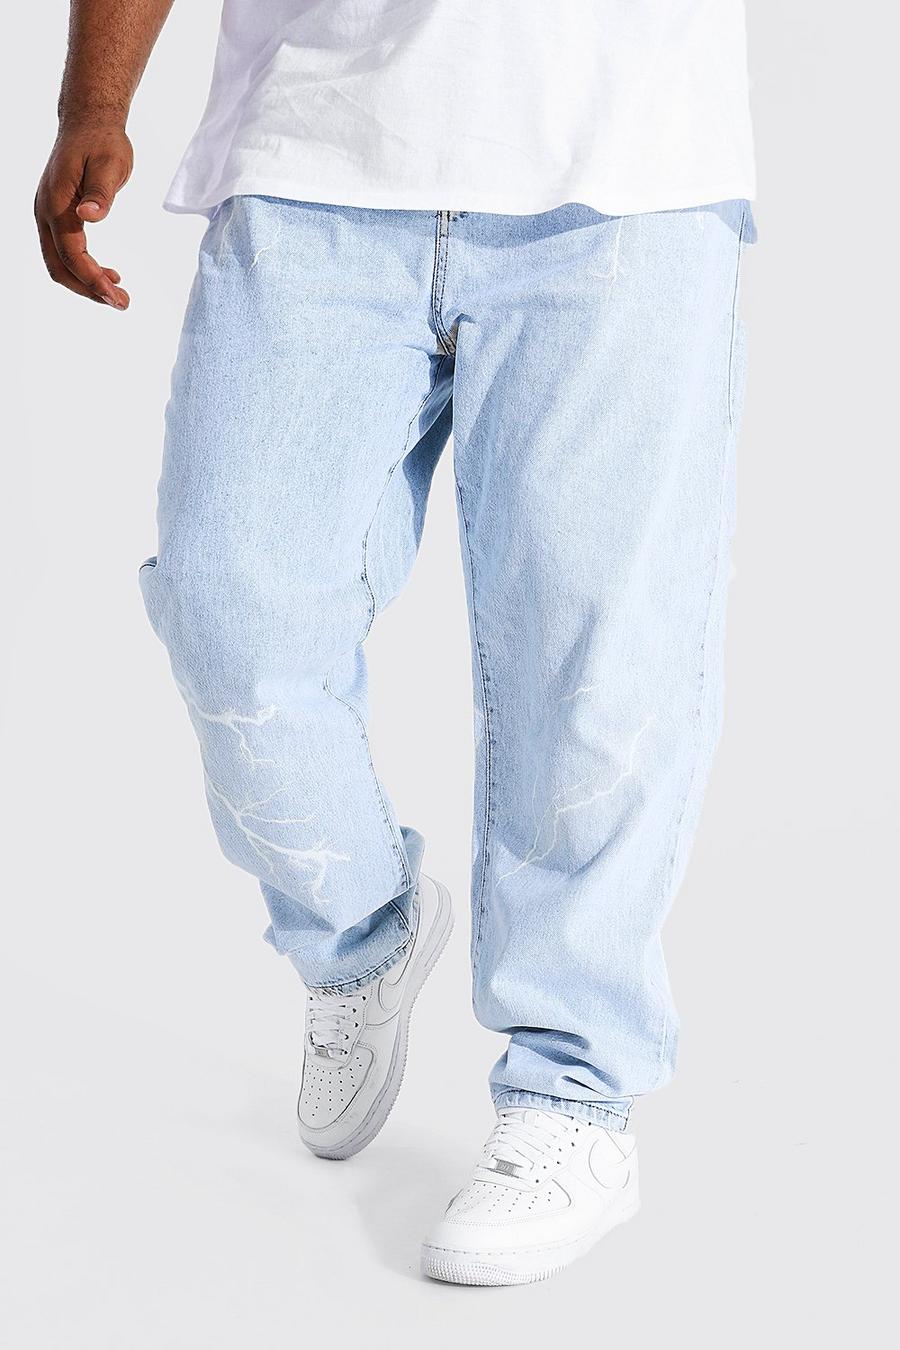 כחול קרח ג'ינס בגזרה ישרה עם הדפס ברקים, מידות גדולות image number 1